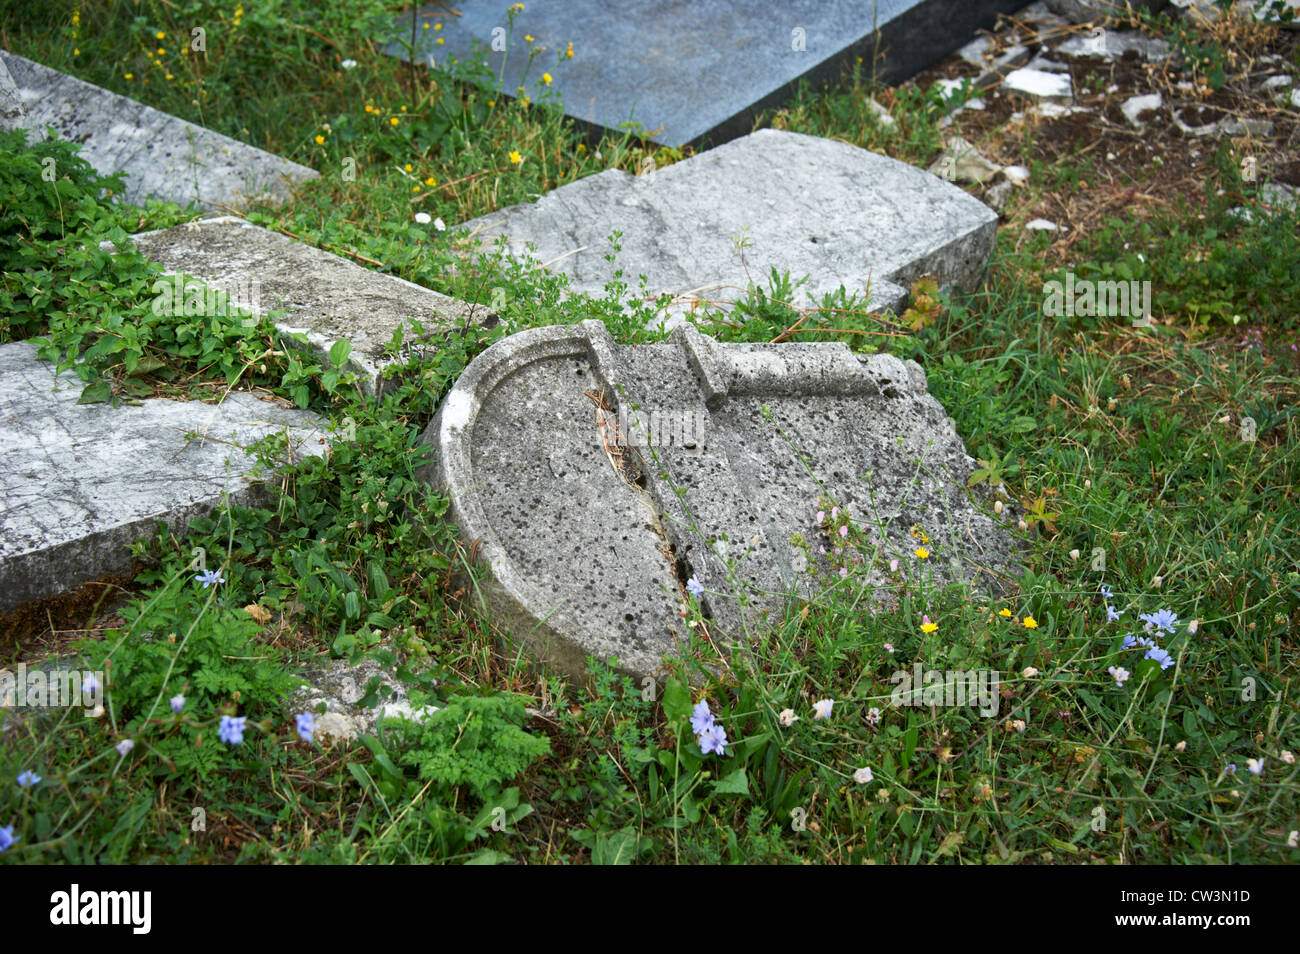 L'ancien cimetière juif de Sarajevo, Bosnie Herzégovine Banque D'Images